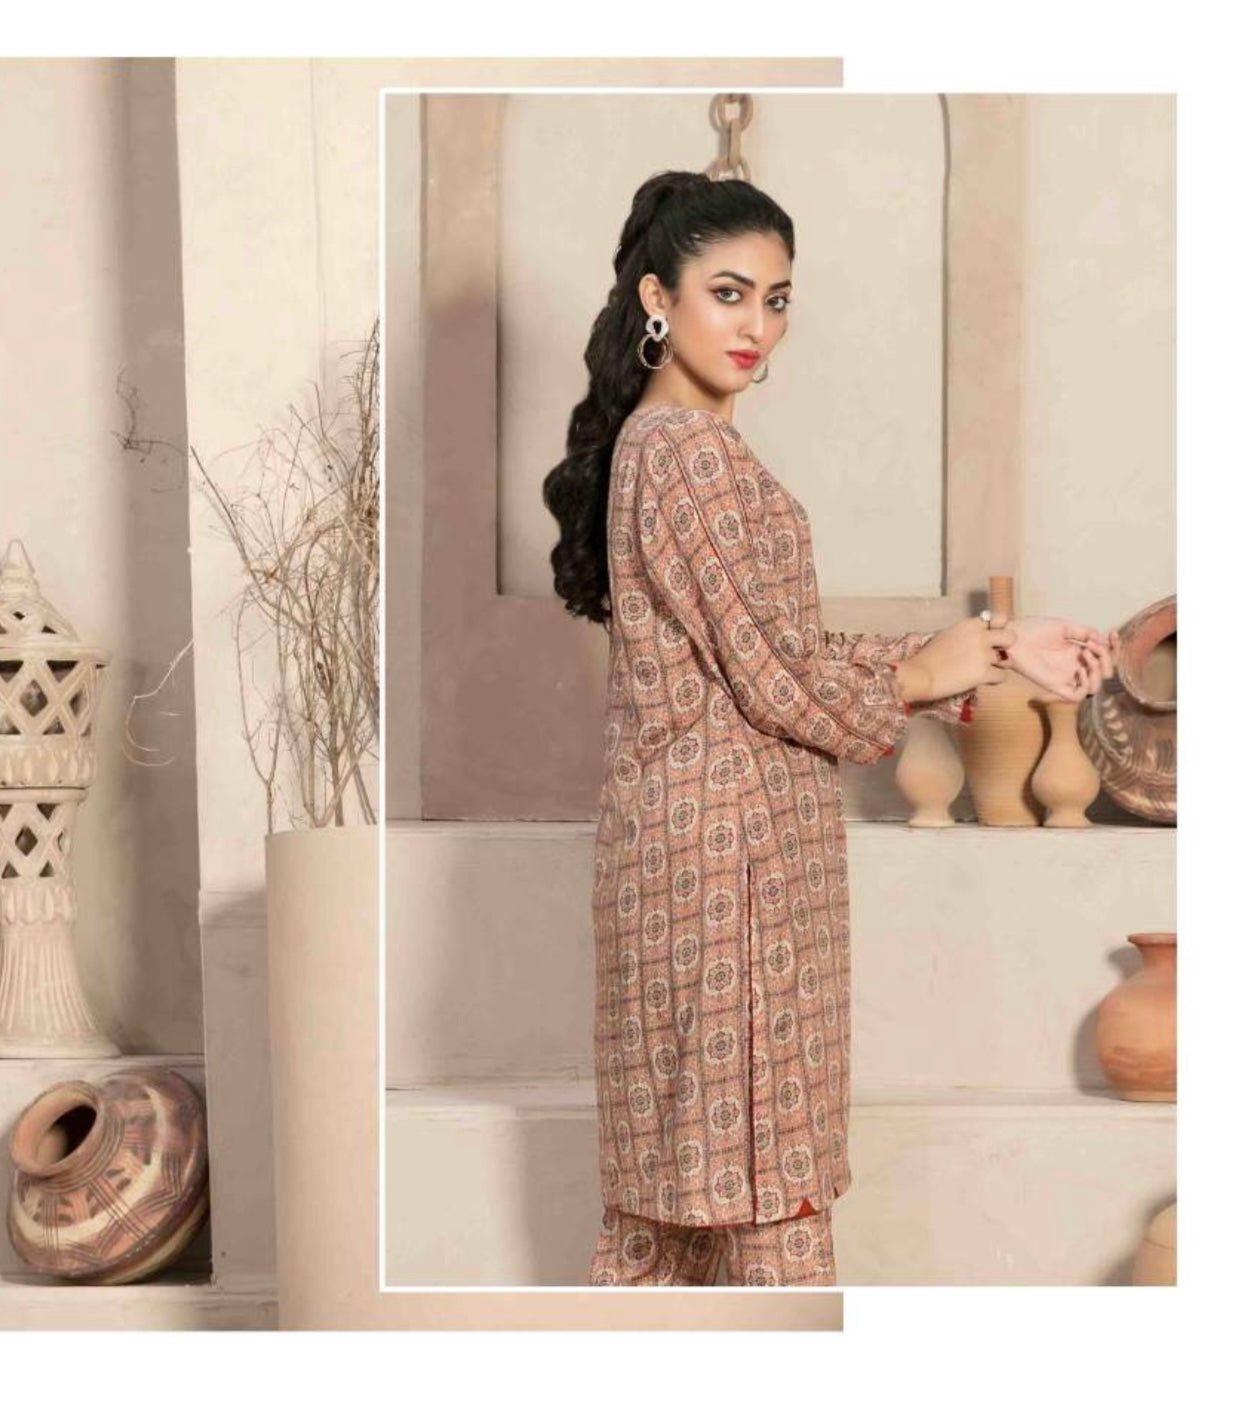 Pakistani Stitched Tunic & Pant Dress sets for Women, Small Large - Diana's Fashion Factory